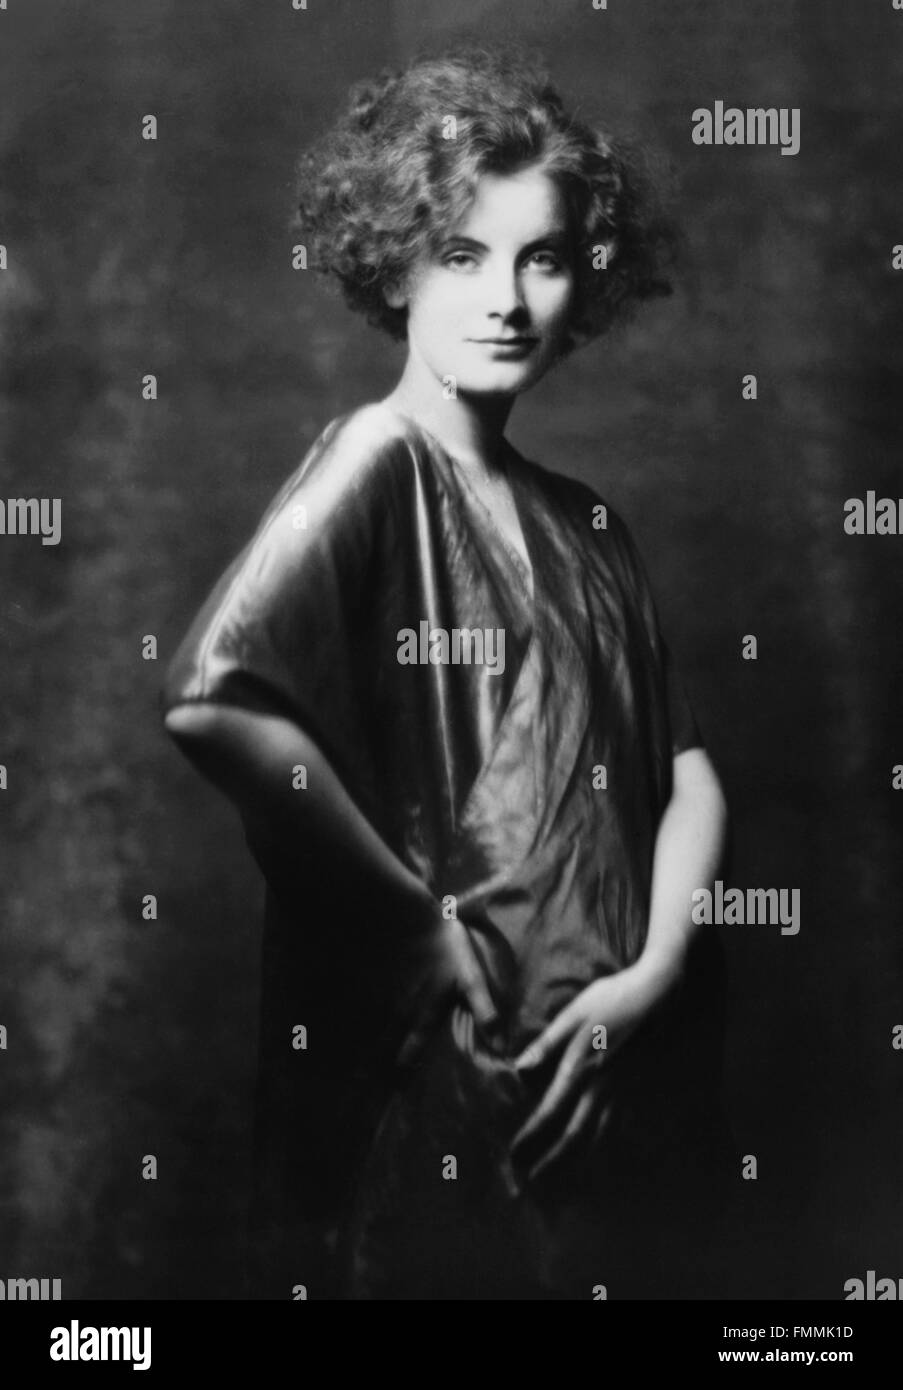 Greta Garbo. Portrait de la star de cinéma suédois né, Greta Garbo, par Arnold Genthe, 1925 Banque D'Images